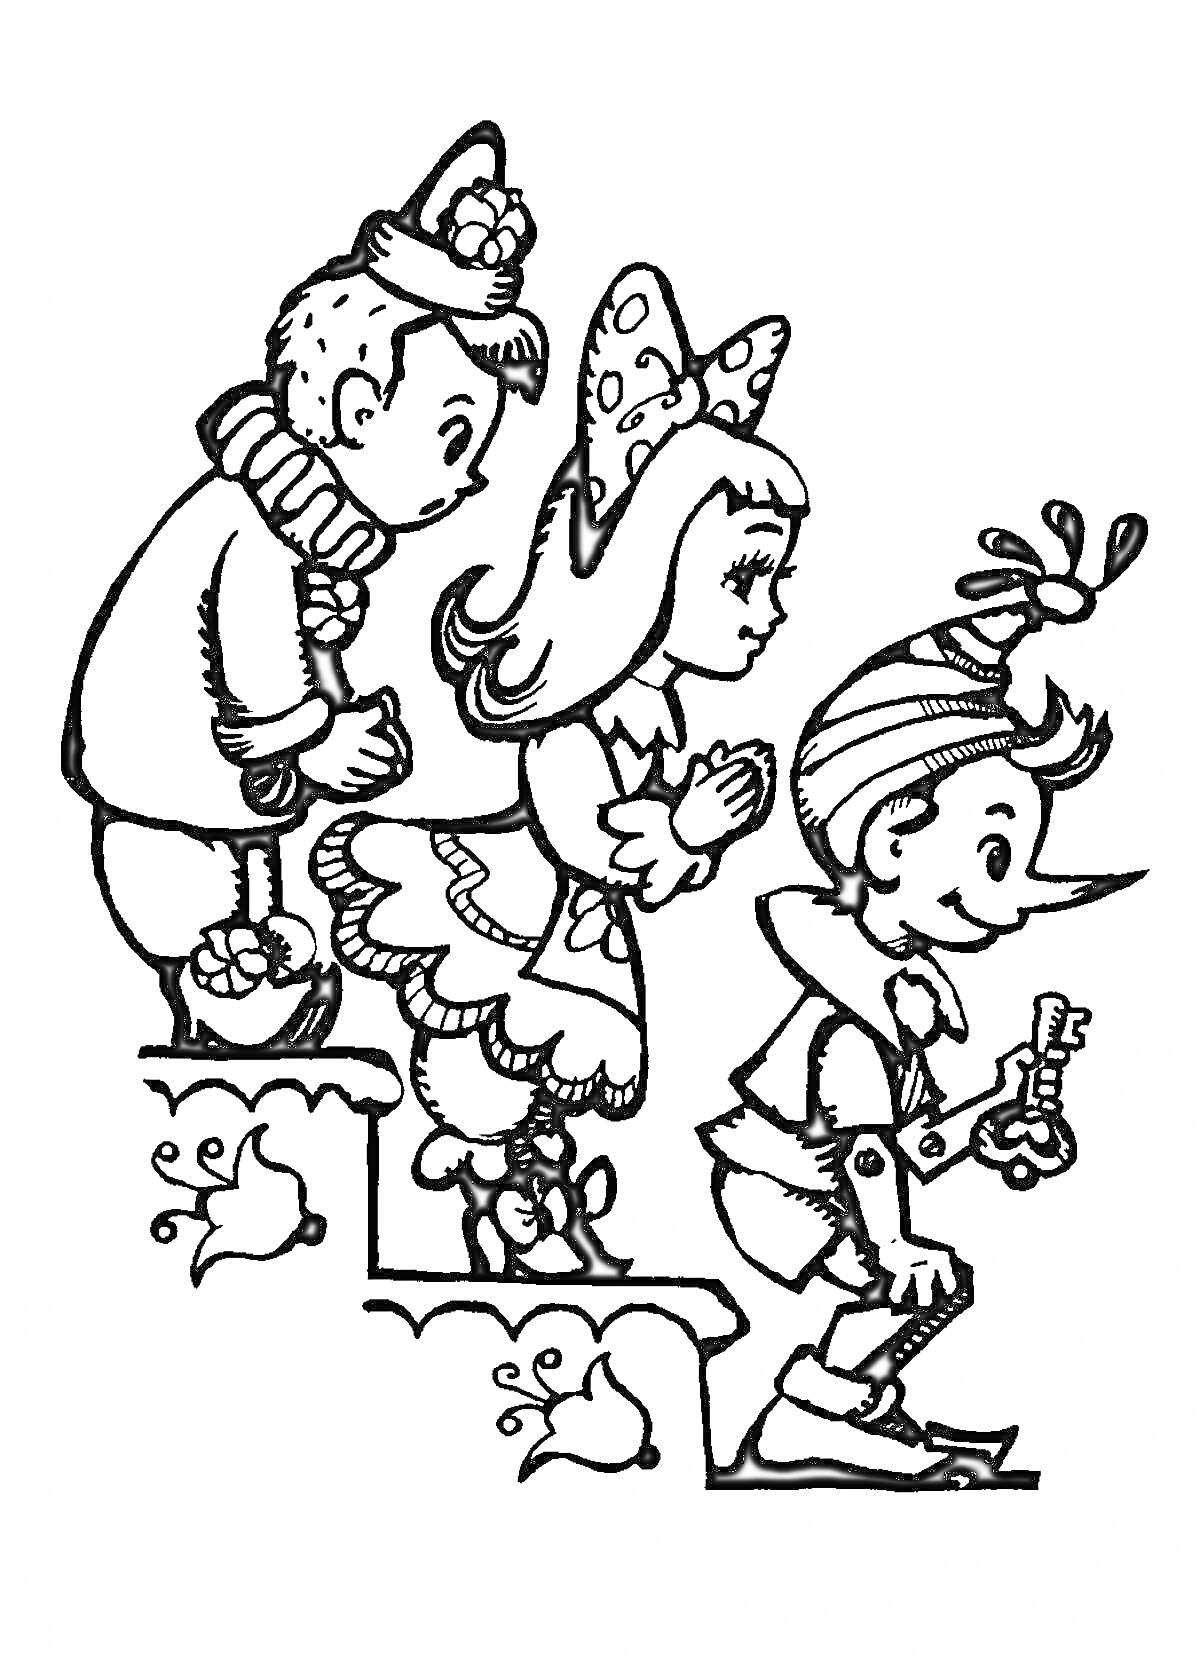 Буратино с тремя персонажами, ключом и лестницей